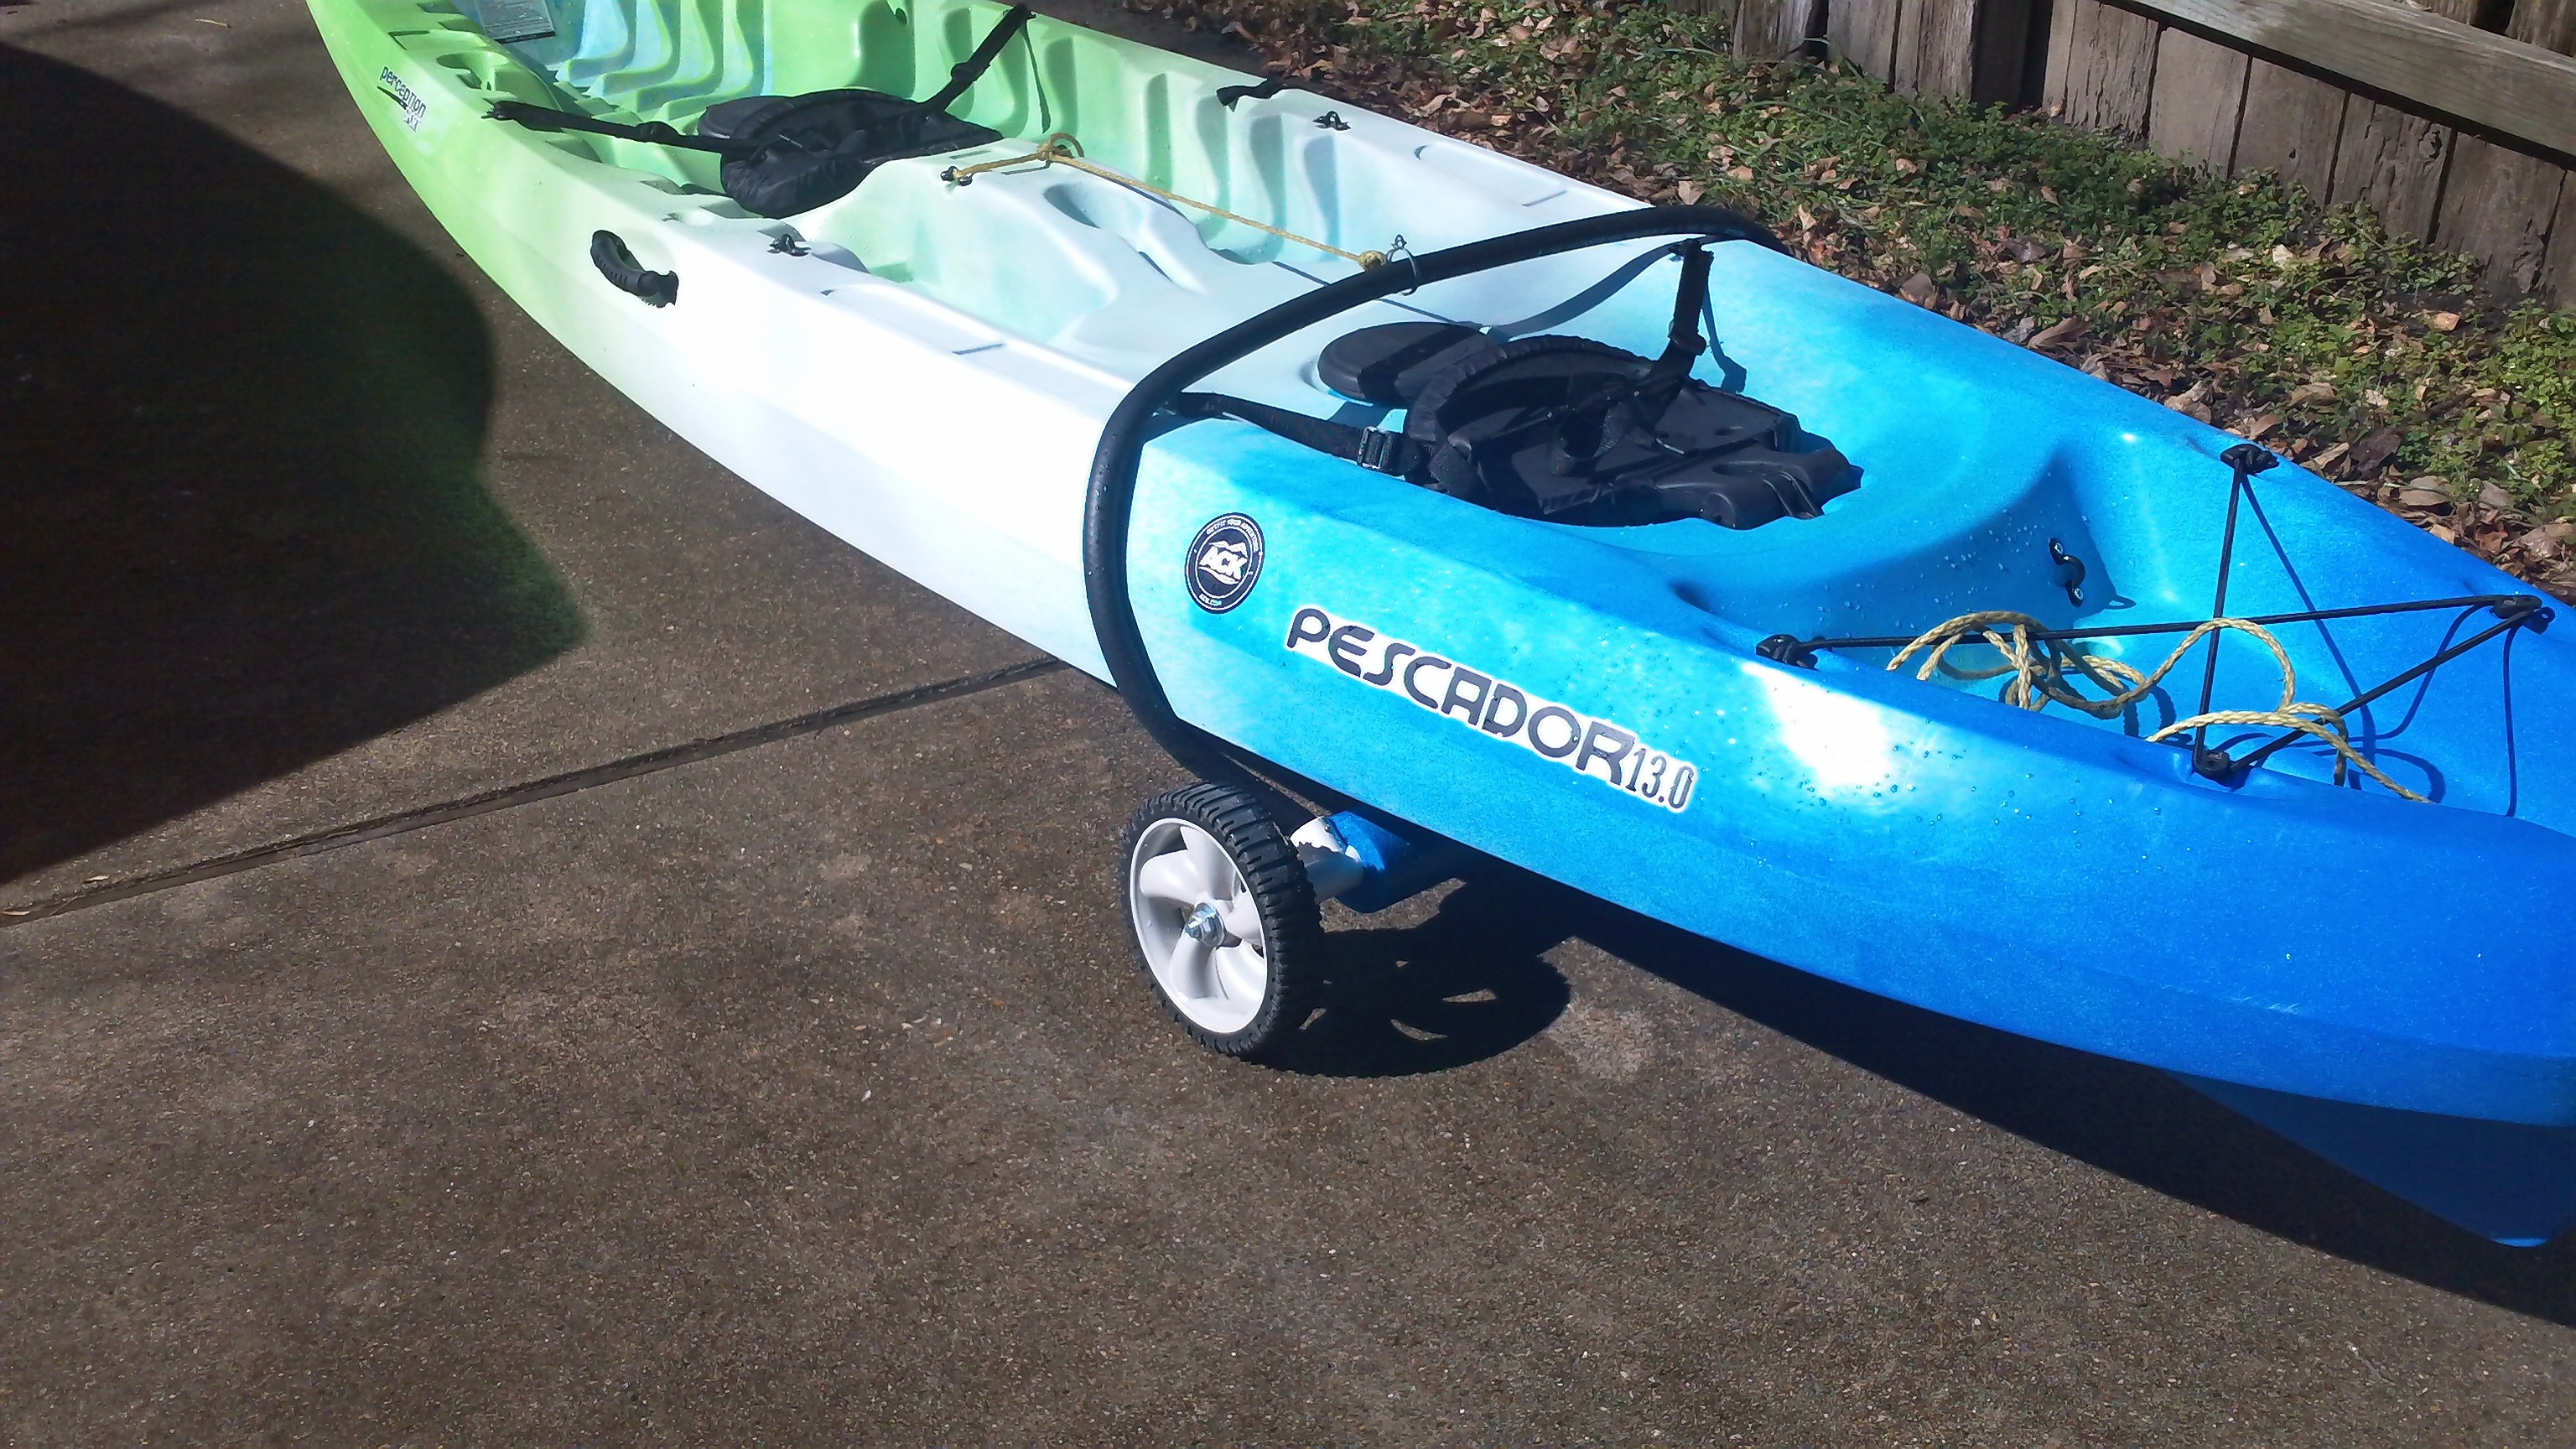 norcal-floats: kayak cart